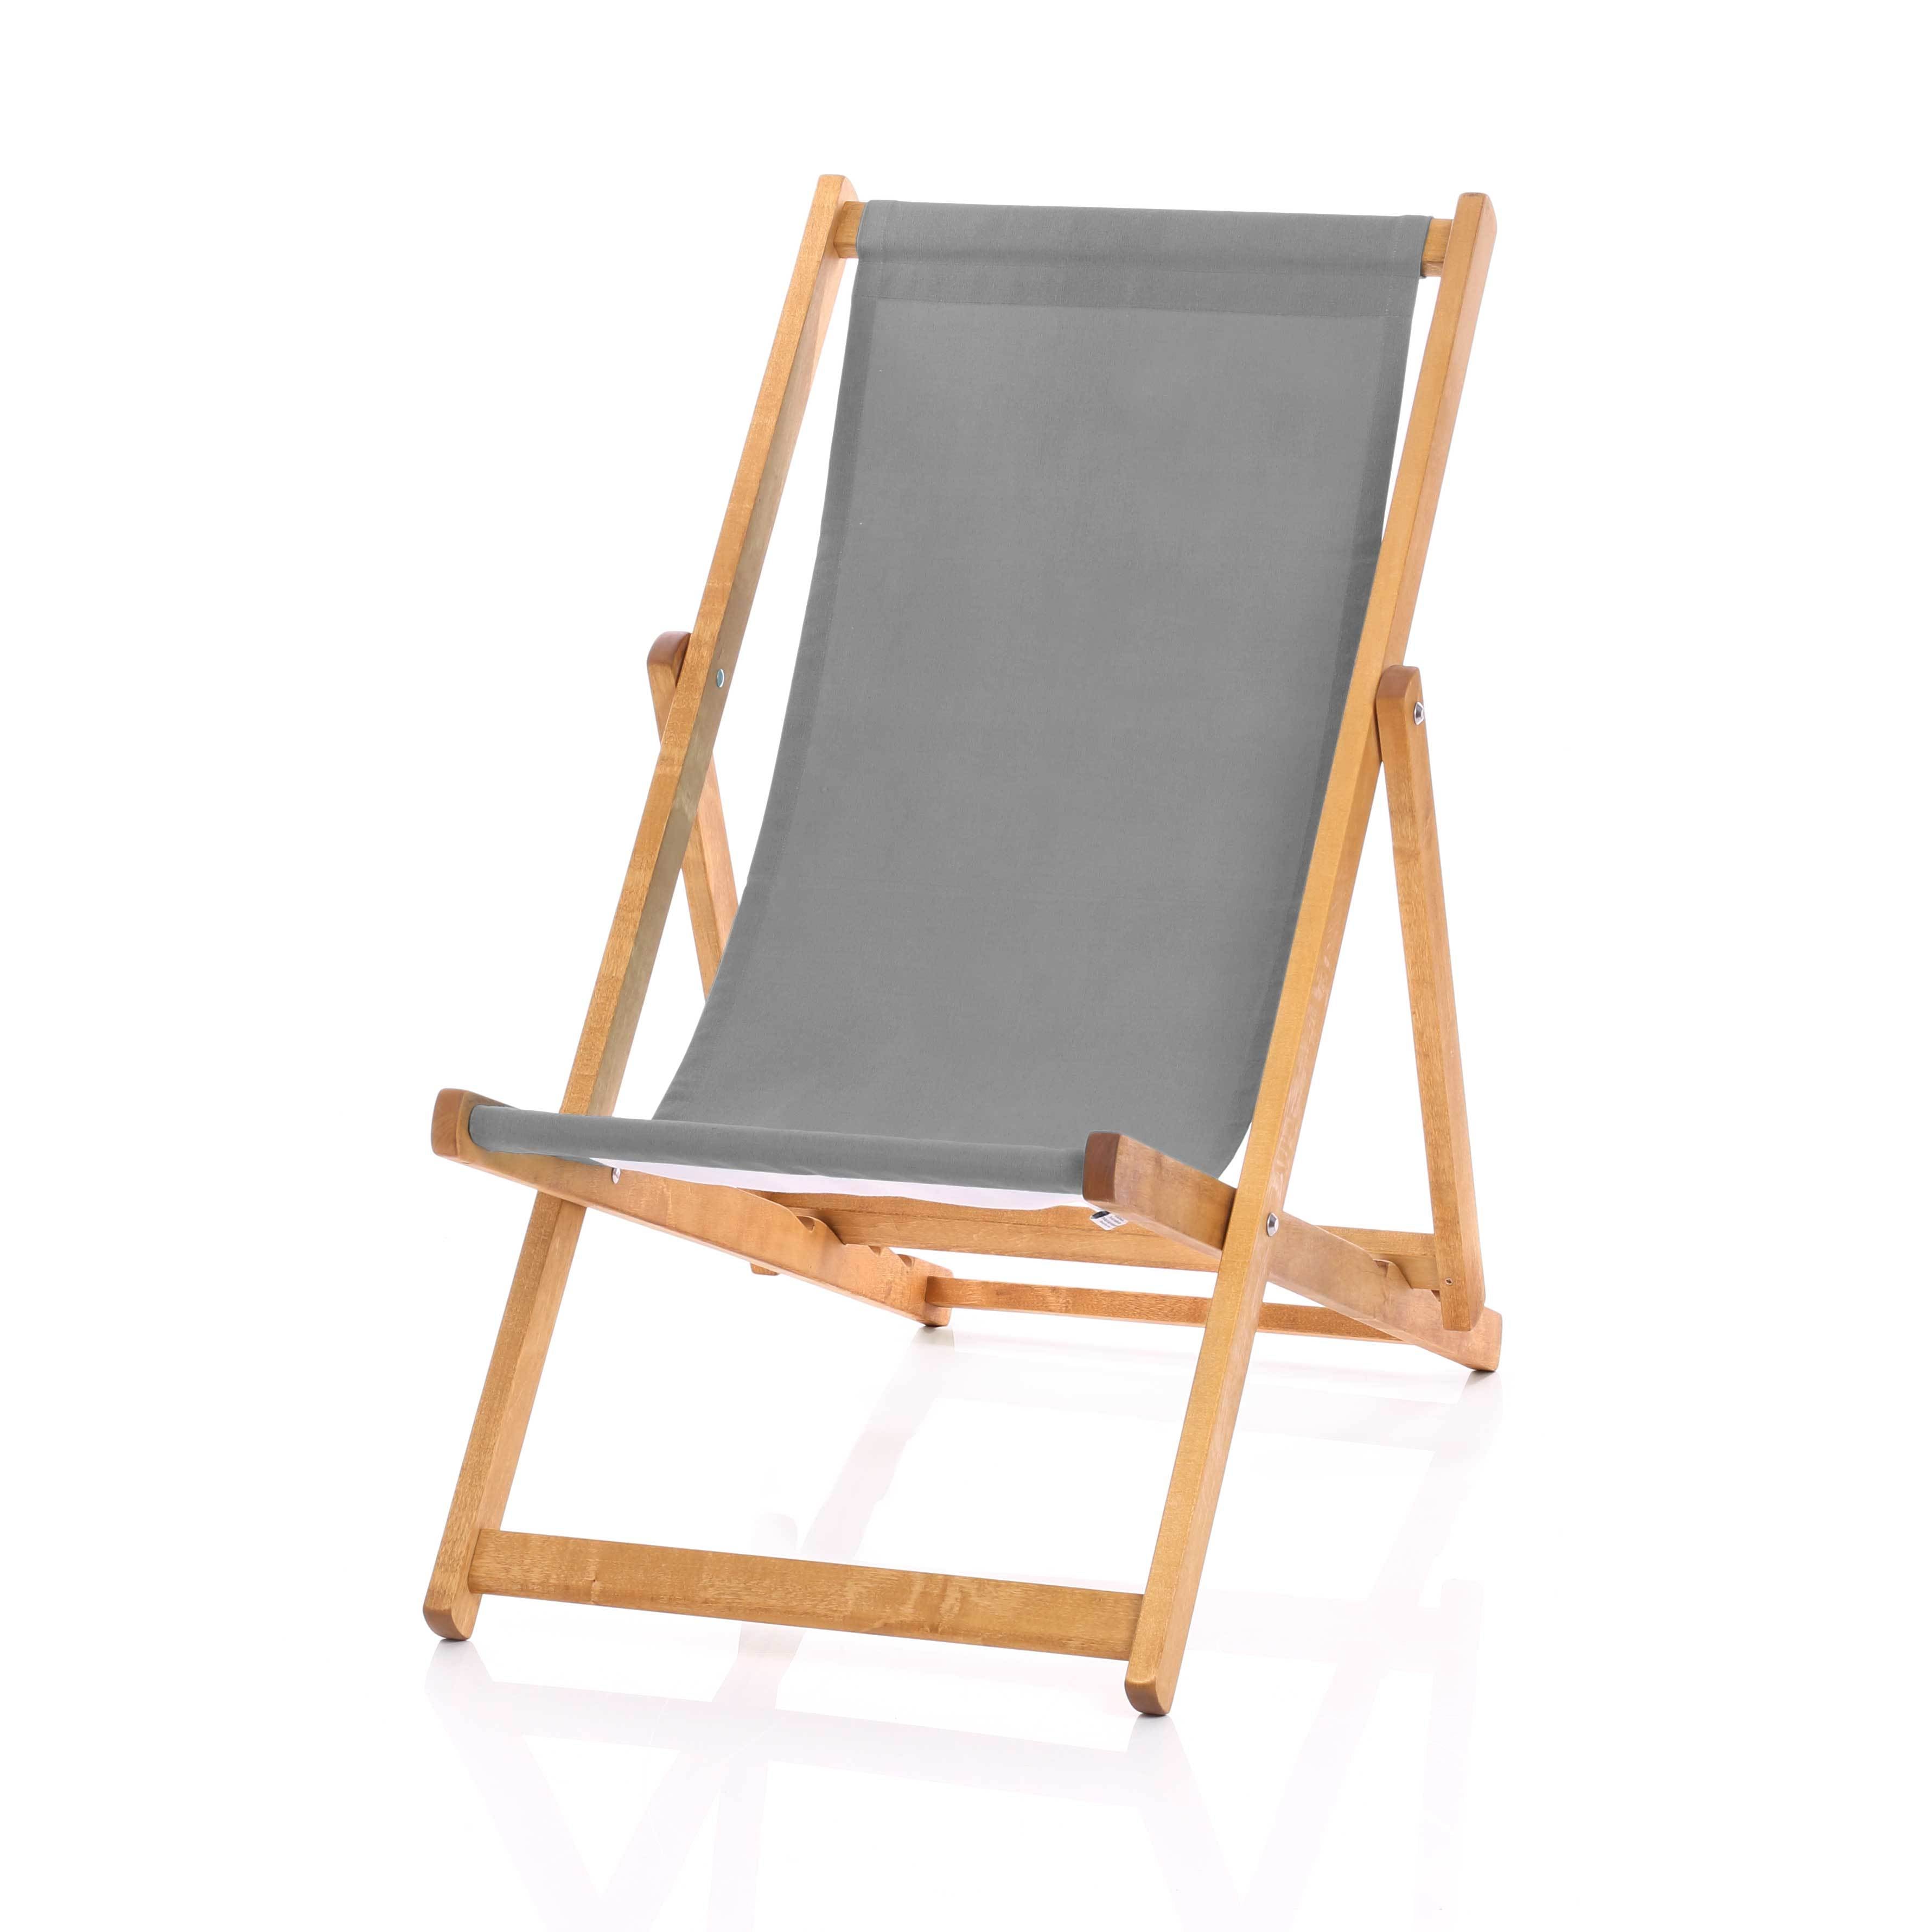 Hardwood Deckchair - Plain Grey